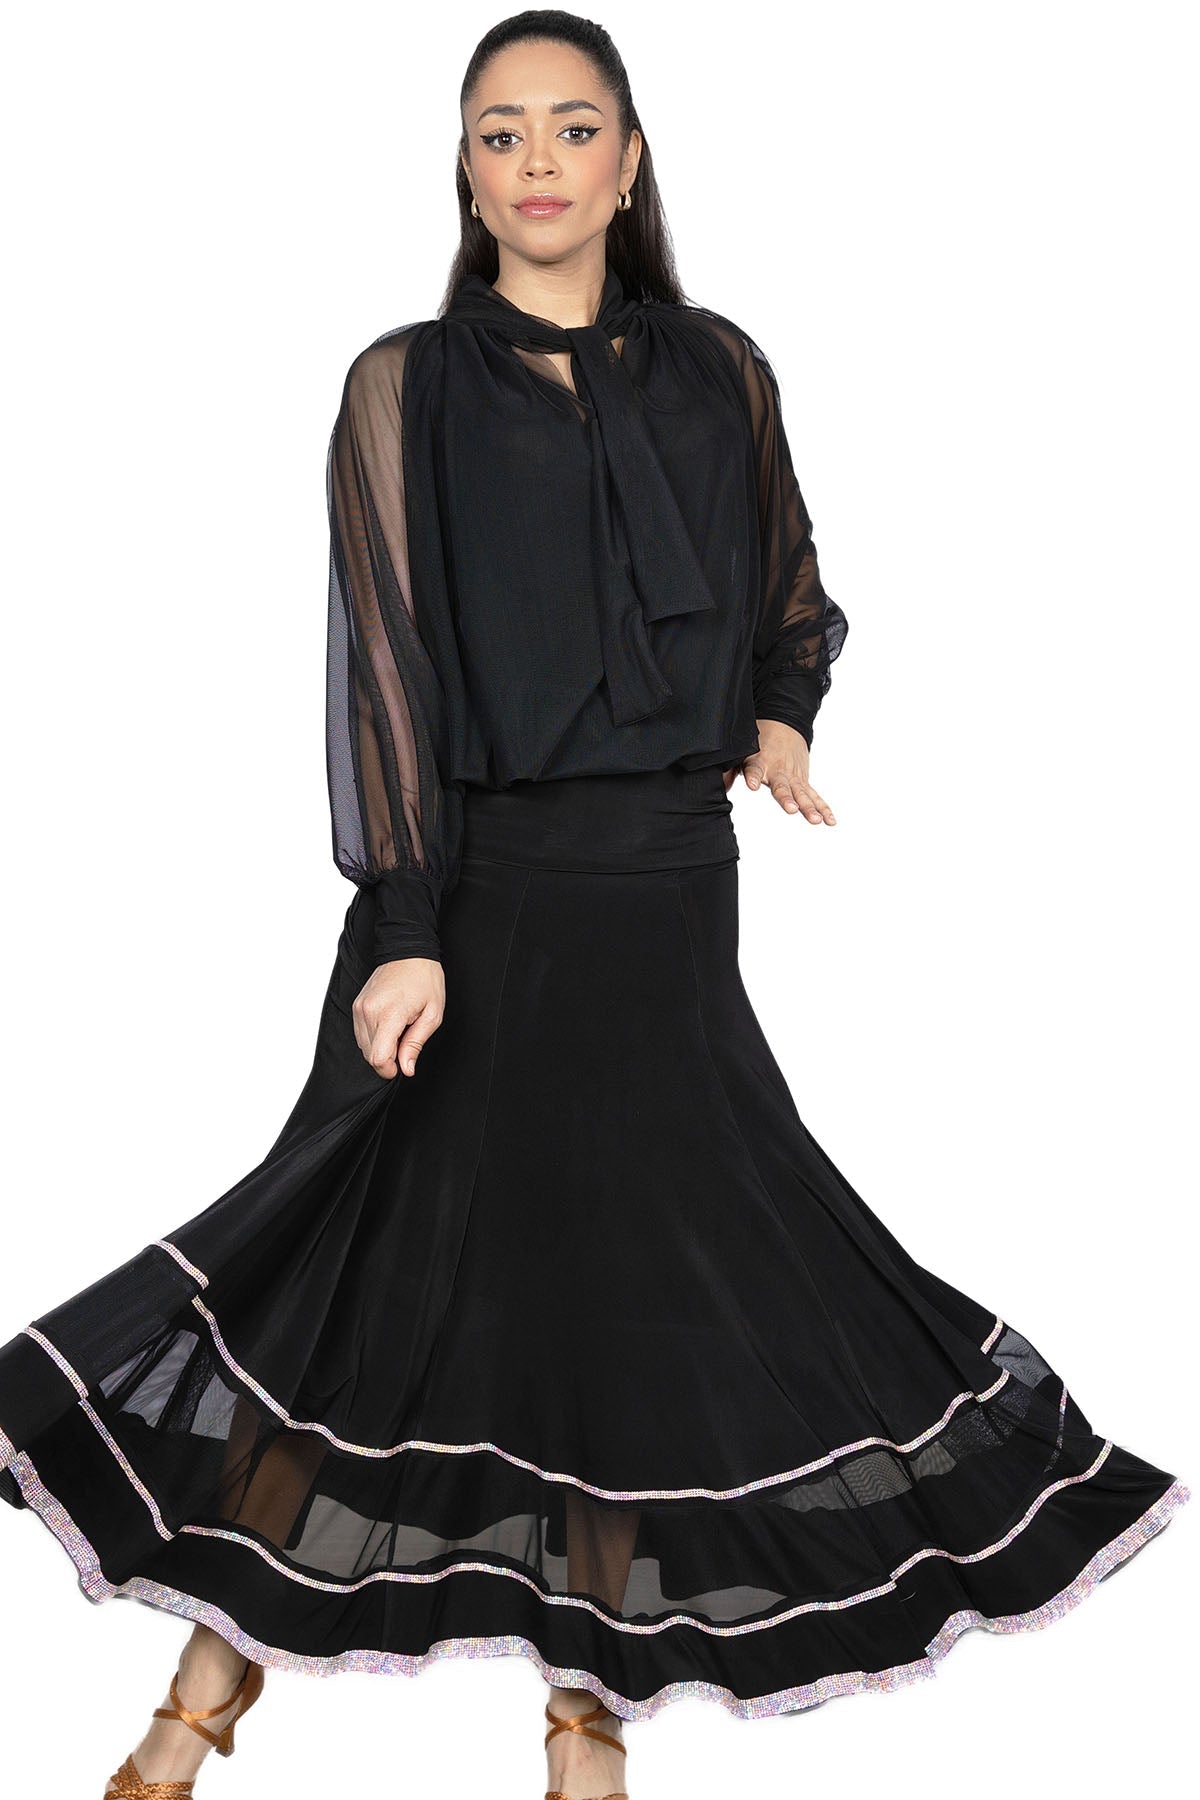 Ladies' black dancing skirt with rhinestones